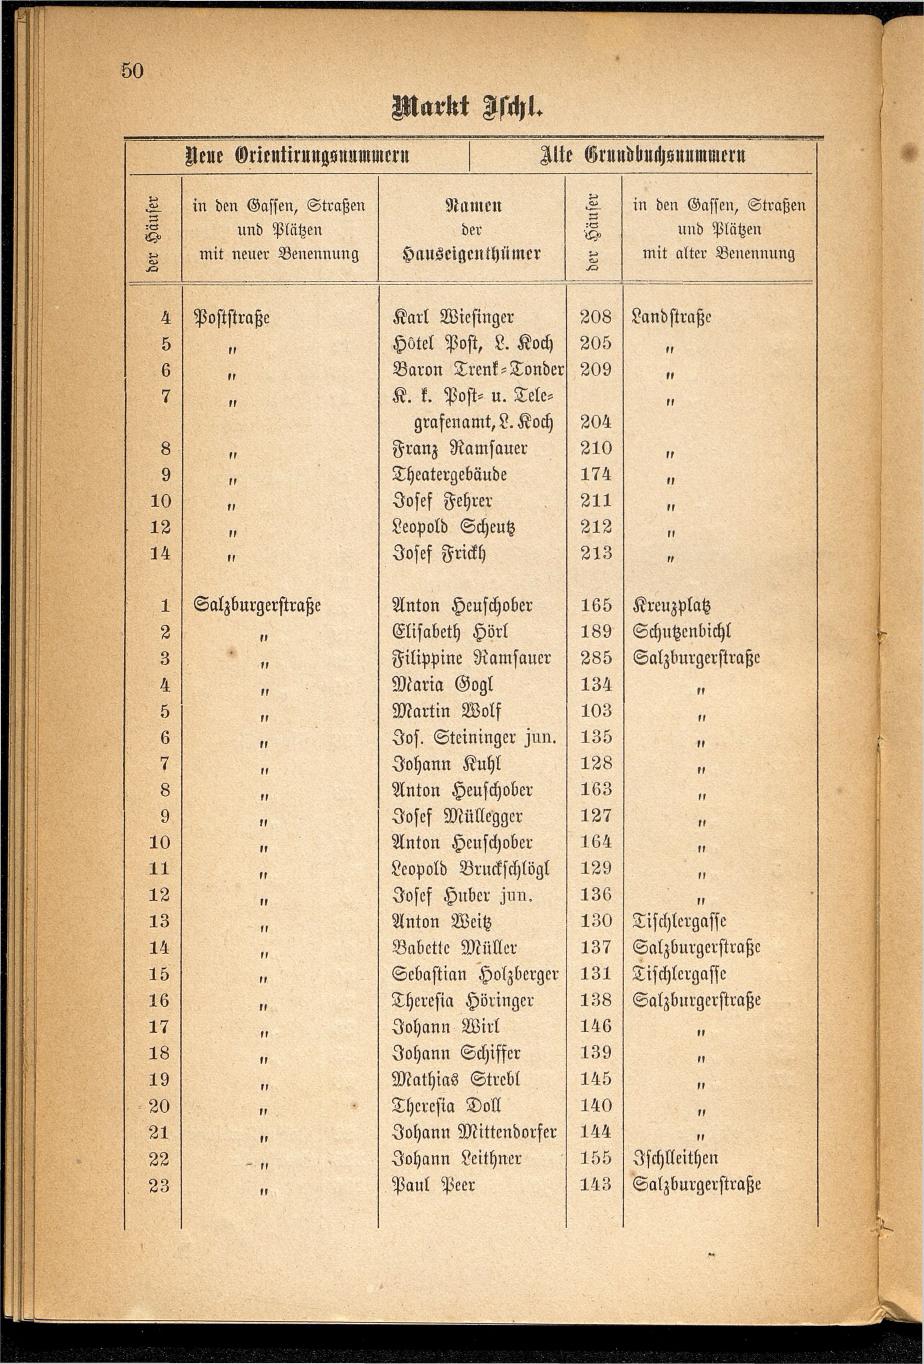 Häuser-Verzeichnis des Marktes und Kurortes Ischl nach den neuen Orientirungsnummern 1881 - Seite 54